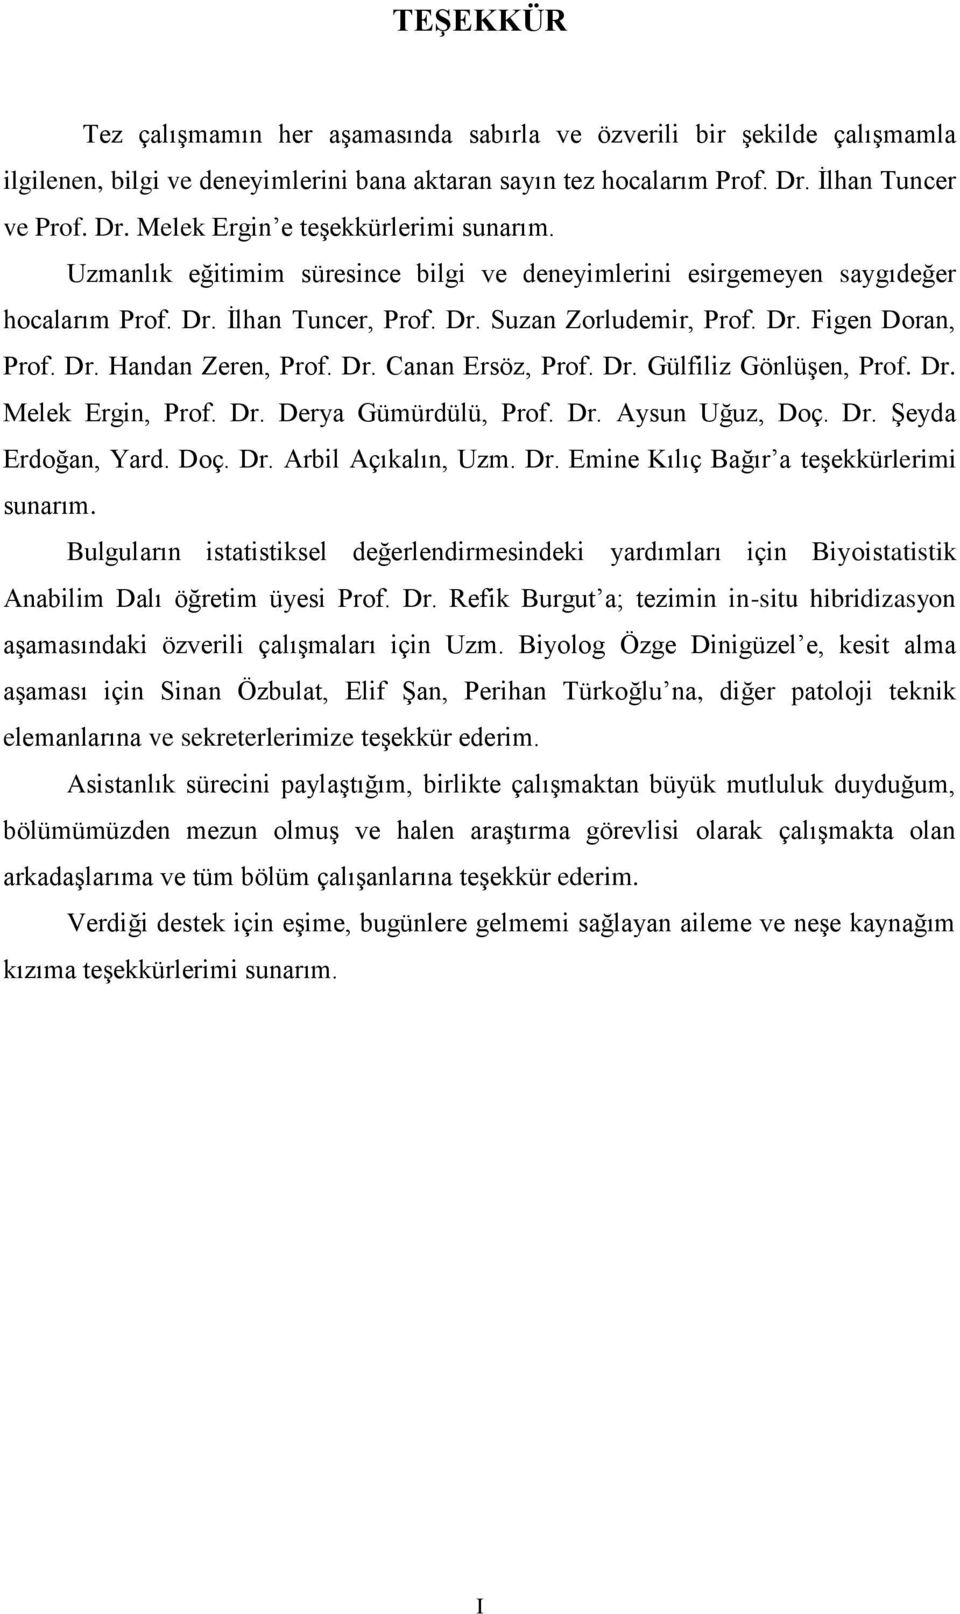 Dr. Gülfiliz Gönlüşen, Prof. Dr. Melek Ergin, Prof. Dr. Derya Gümürdülü, Prof. Dr. Aysun Uğuz, Doç. Dr. Şeyda Erdoğan, Yard. Doç. Dr. Arbil Açıkalın, Uzm. Dr. Emine Kılıç Bağır a teşekkürlerimi sunarım.